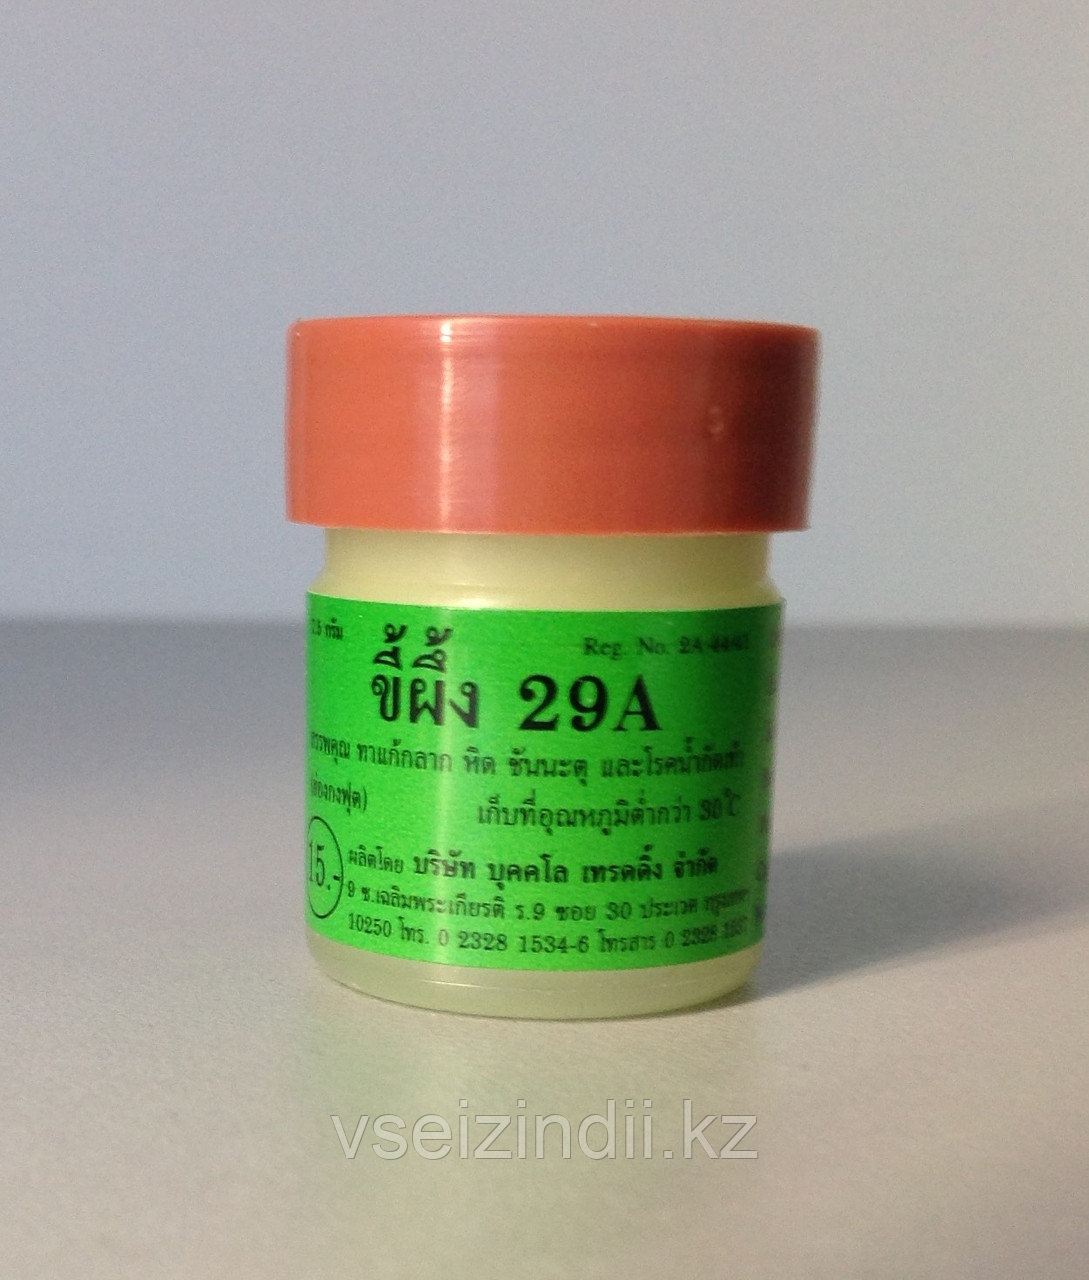 Эффективная тайская мазь для лечения псориаза - 29А, себорея, демодикоз, стригущий лишай, угри